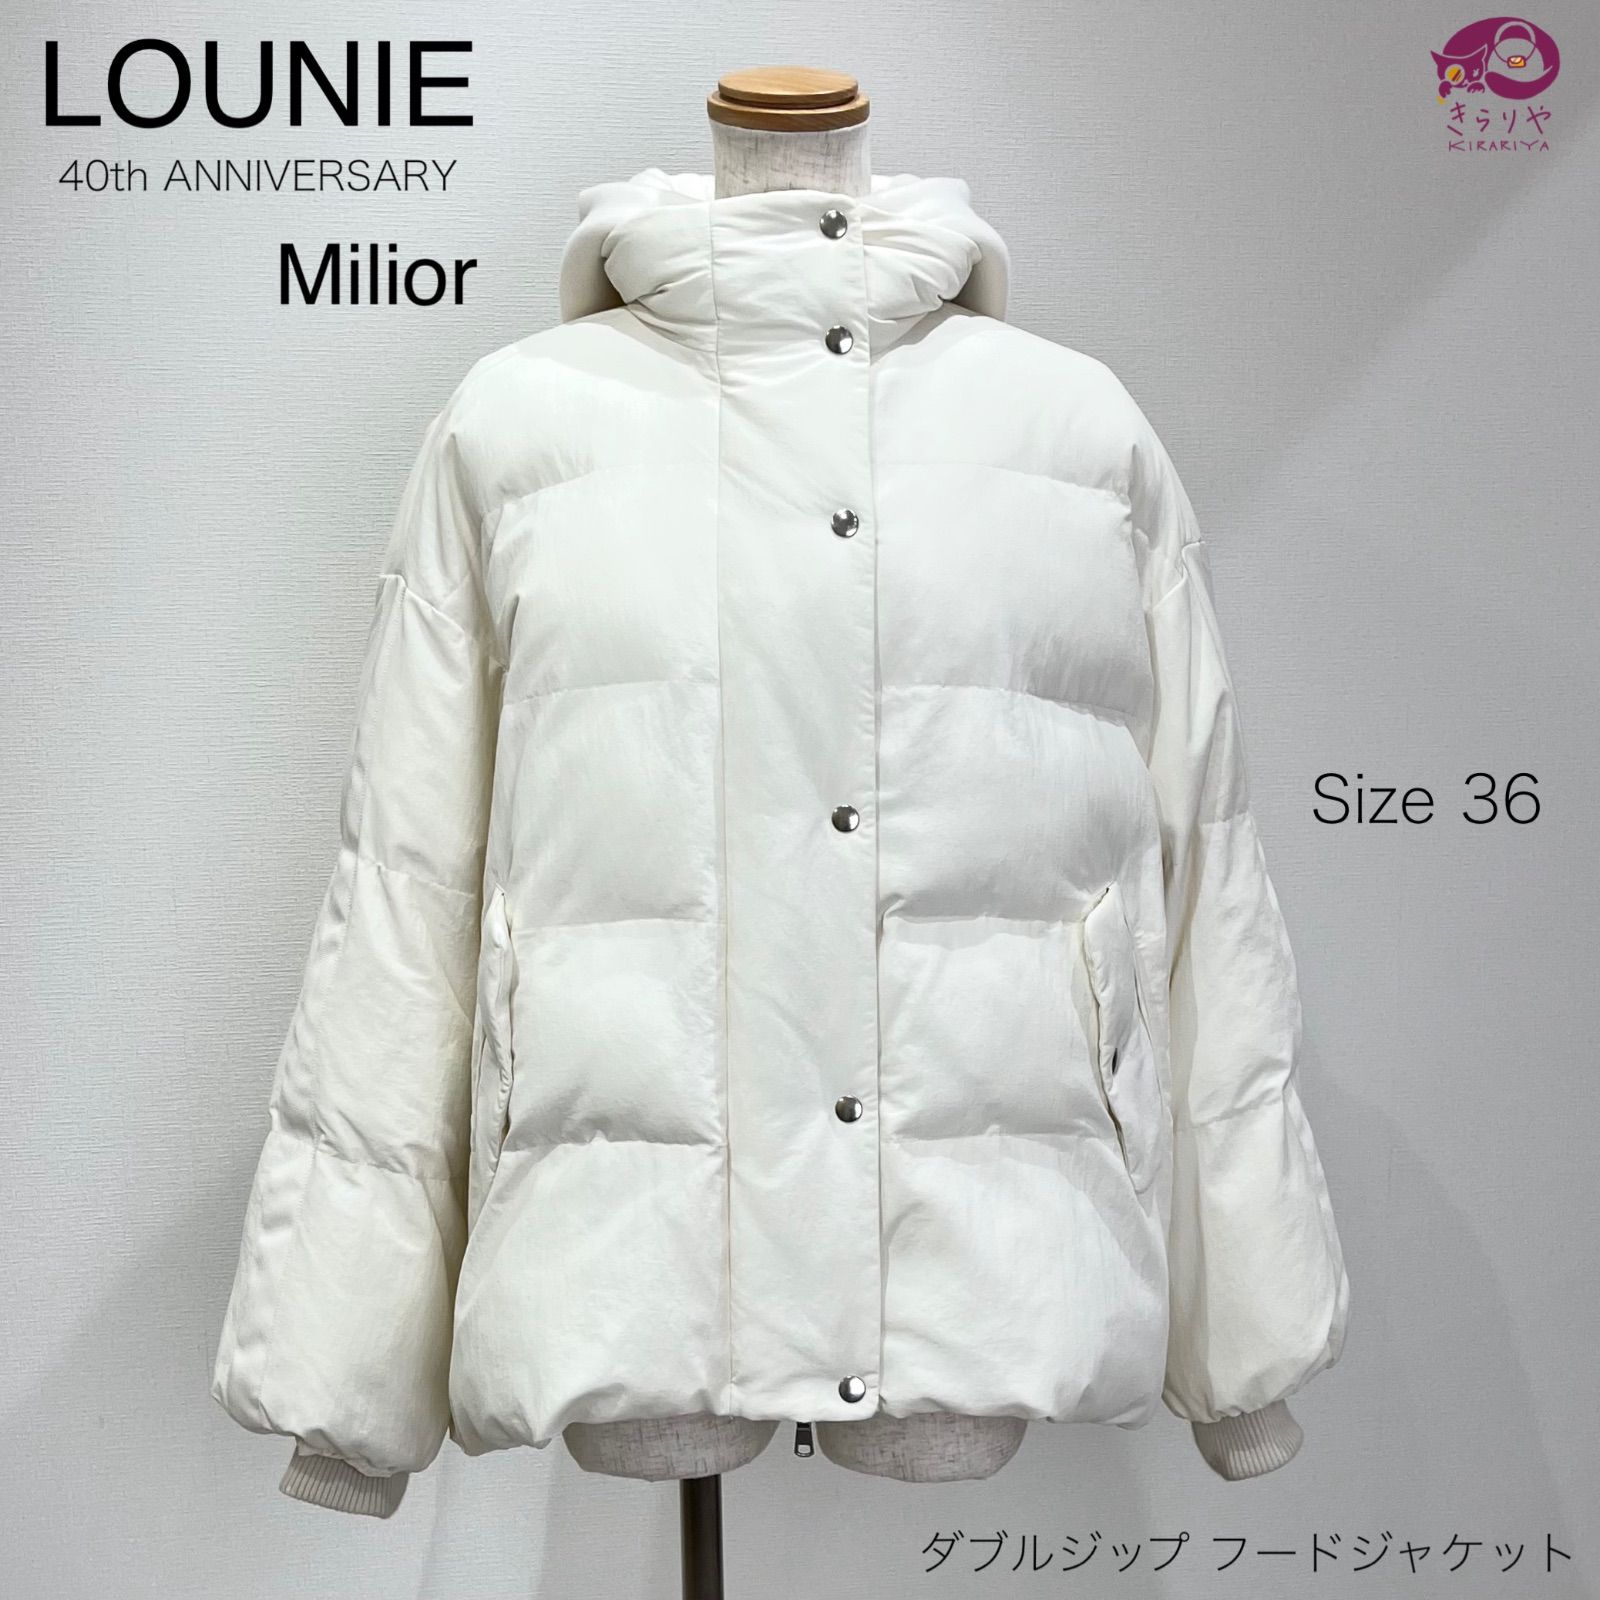 Milior美品 LOUNIE ルーニィ 40th ウールジップジャケット Milior 